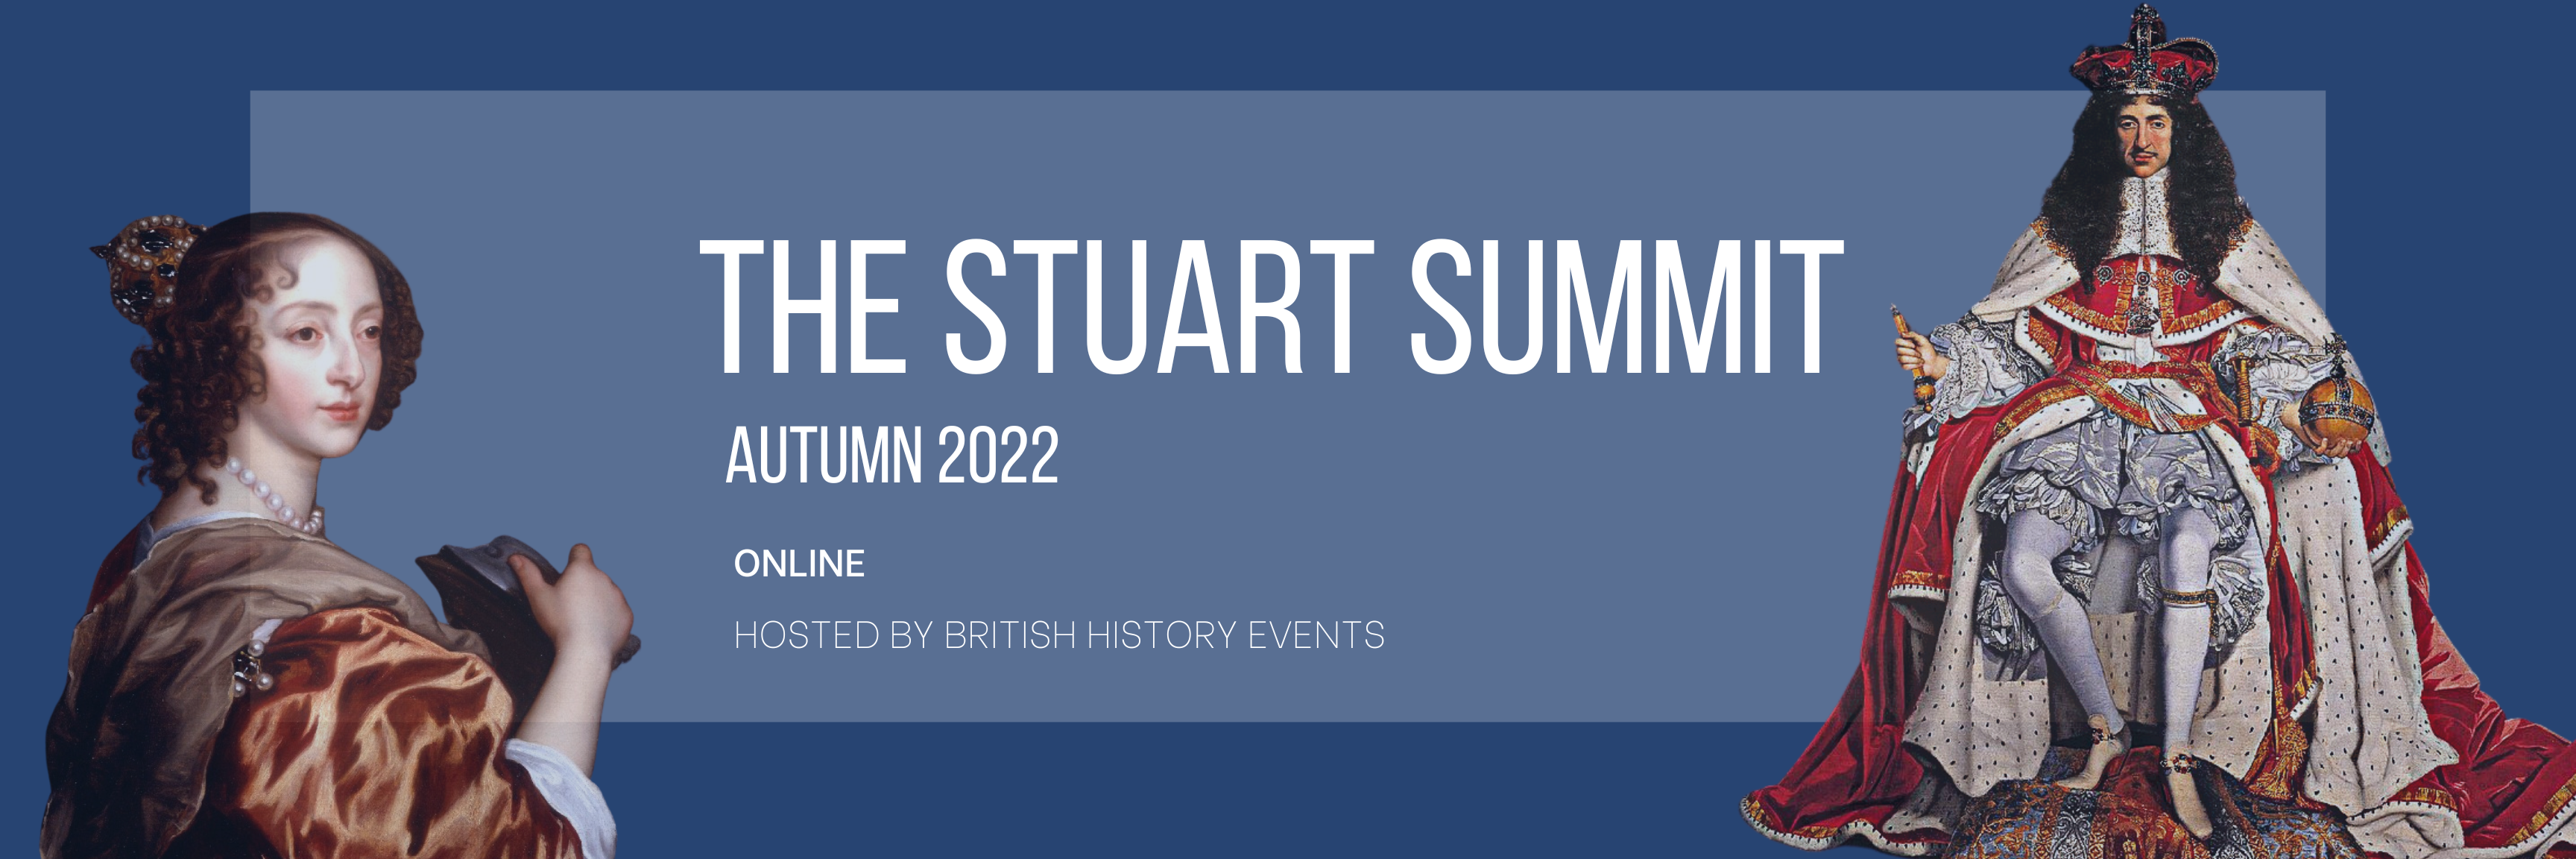 Stuart Summit Online History Festival Autumn 2022